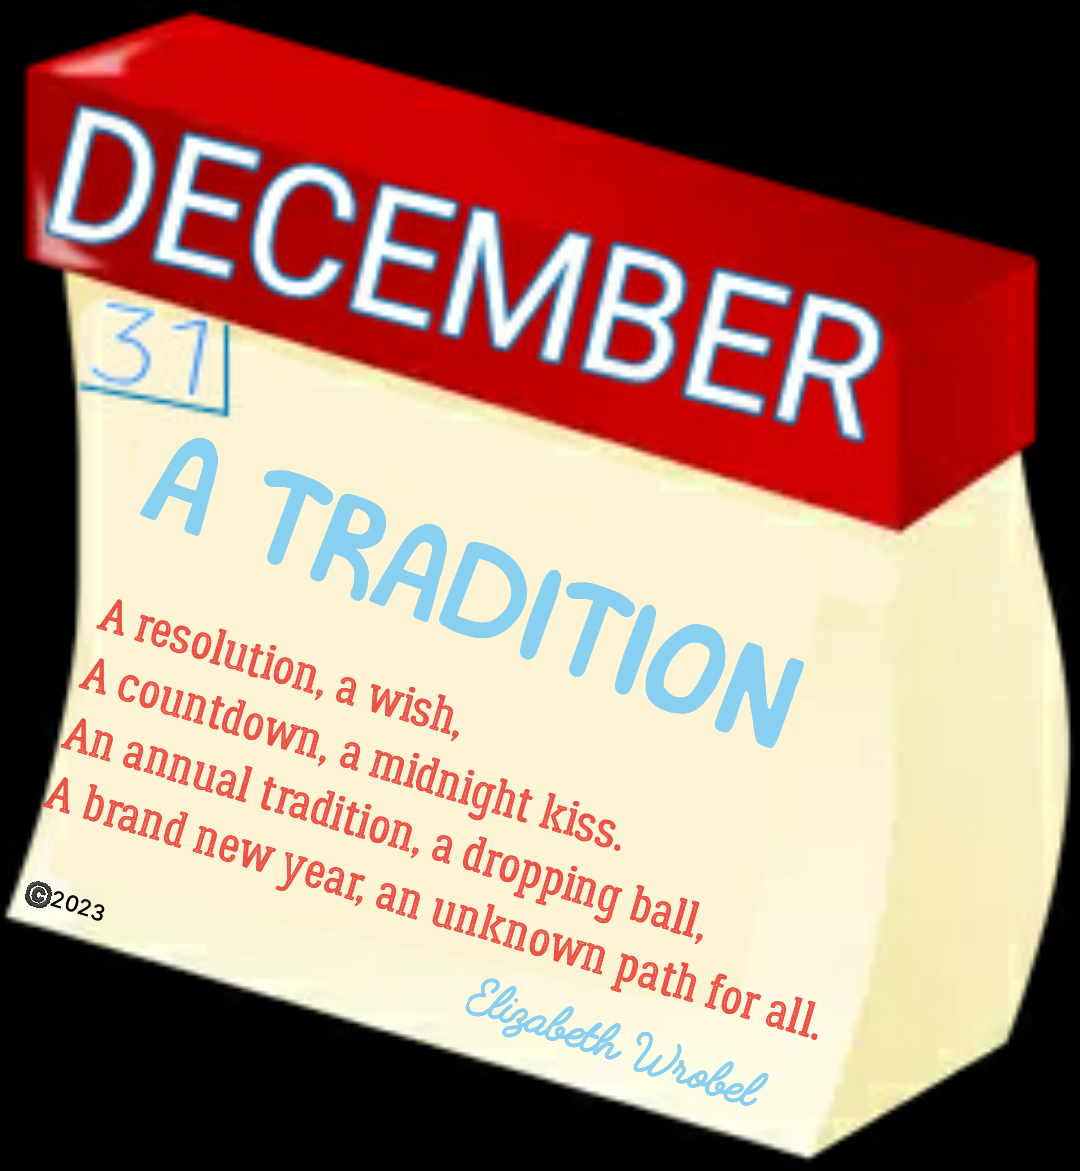 A Tradition a new year rhyme by Elizabeth Wrobel